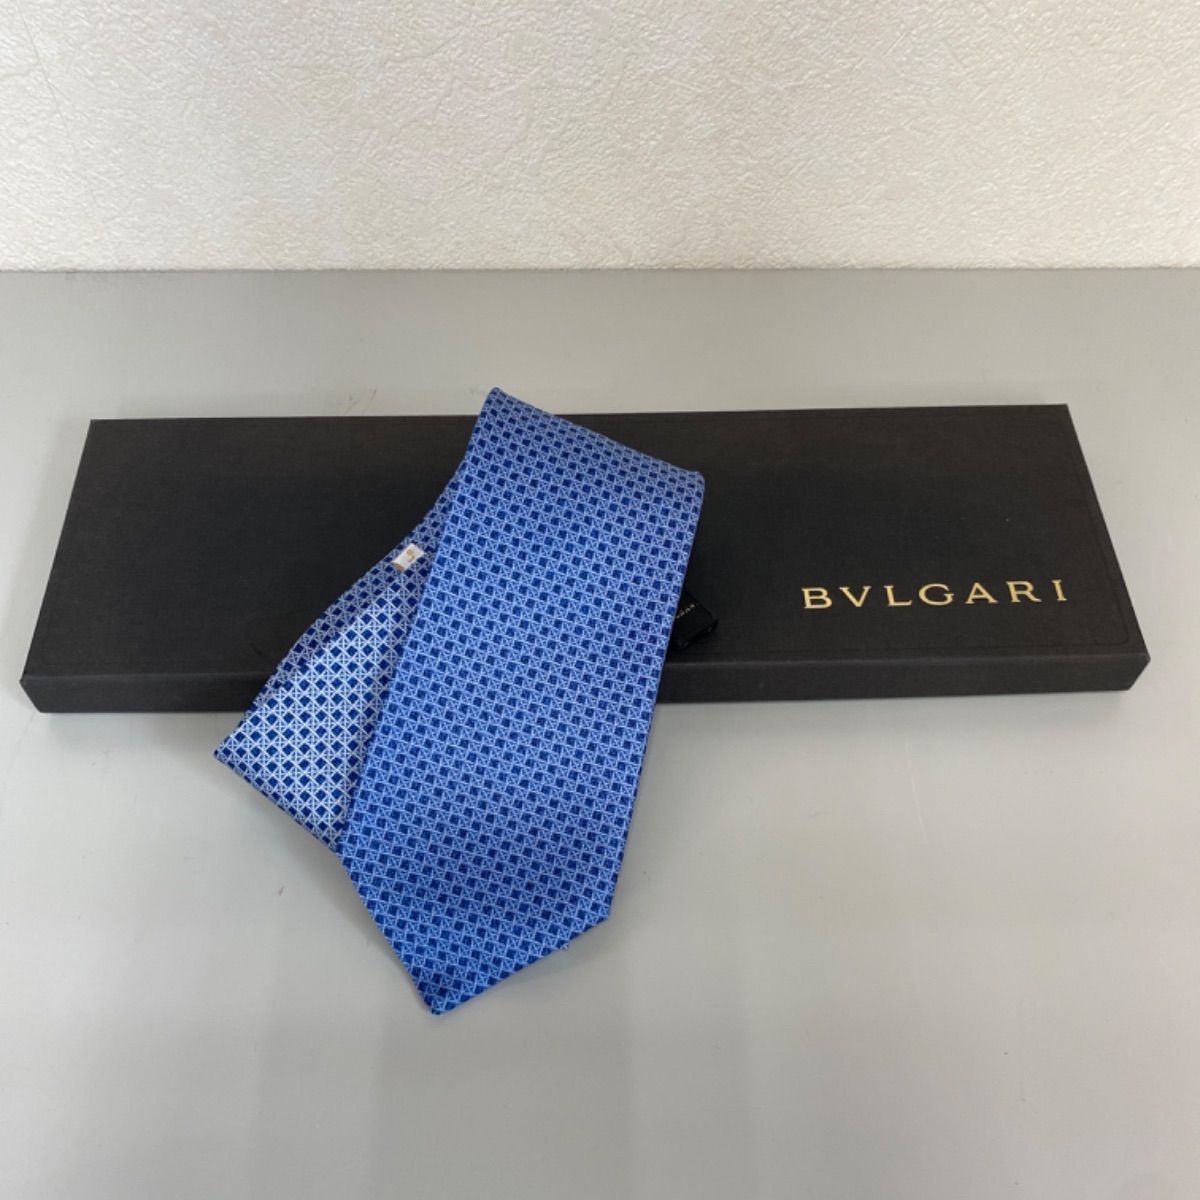 【 BVLGARI 】ブルガリ ネクタイのネクタイを出品してます